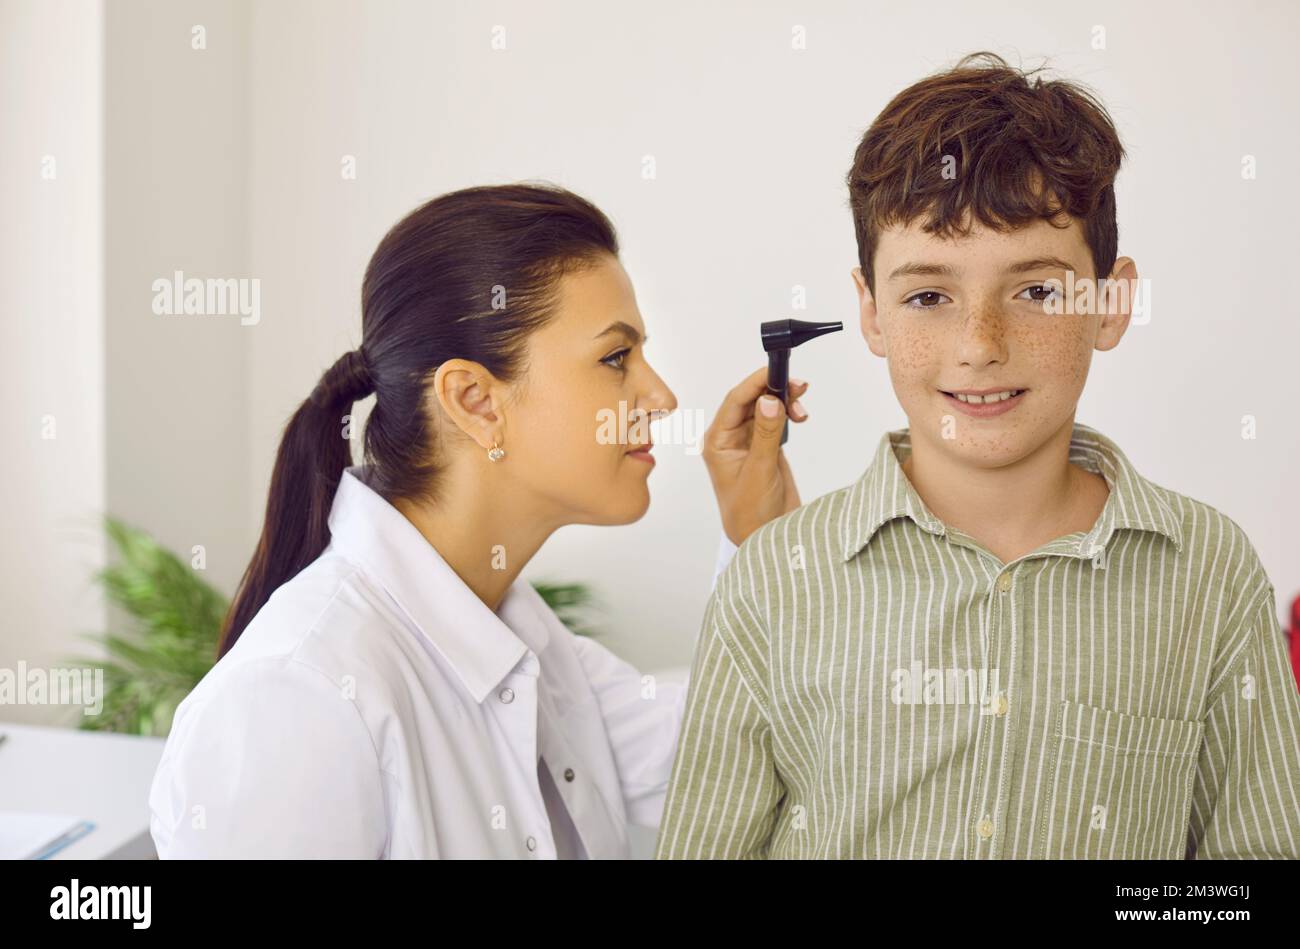 Otorhinolaryngologist uses otoscope to examine child's ear during medical examination in hospital. Stock Photo